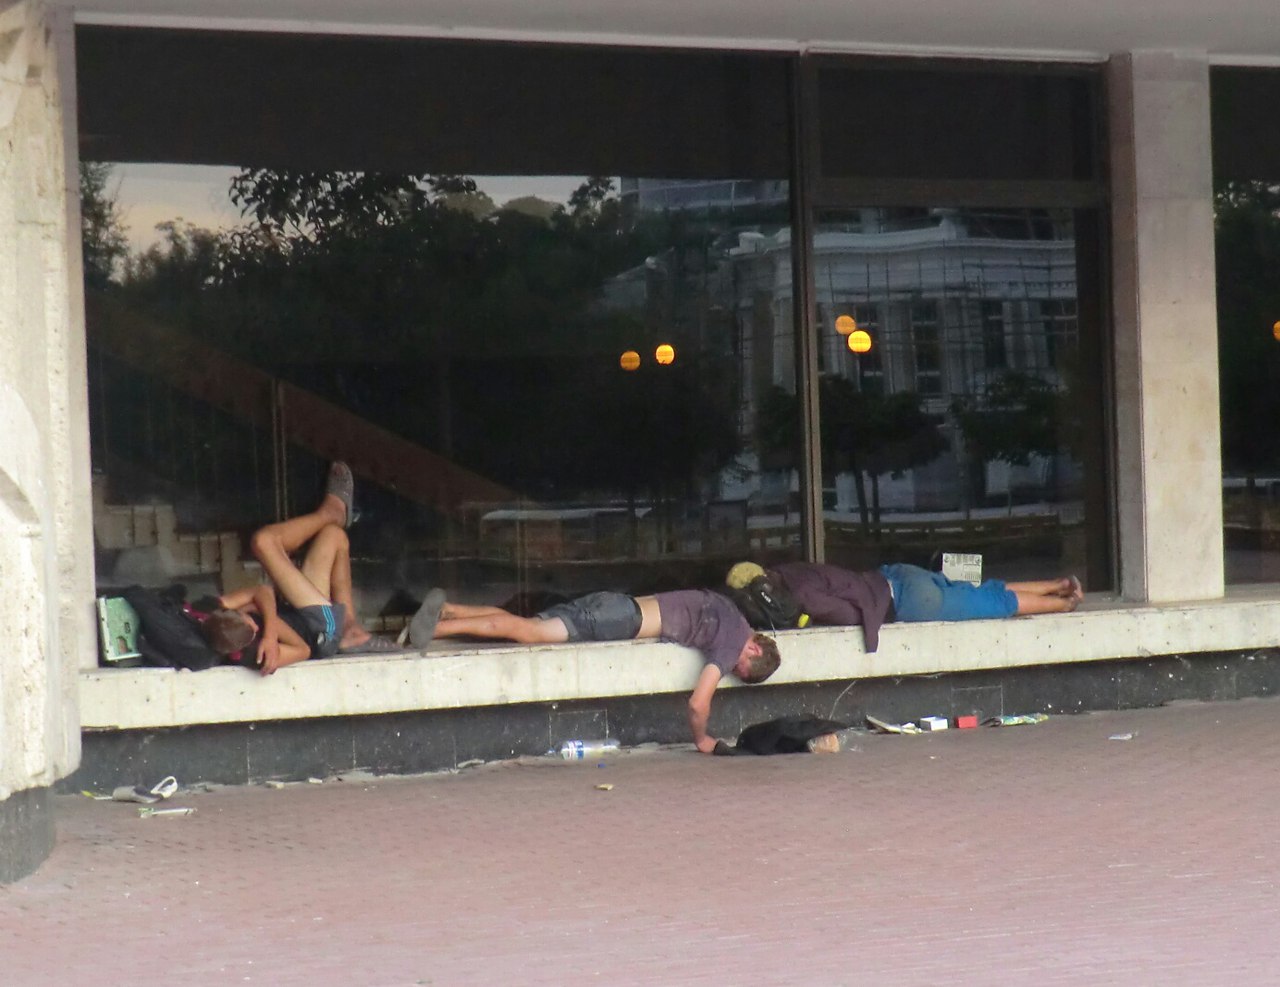 Новость - Люди города - Культурная столица: на подоконниках Музкомедии спят грязные бездомные